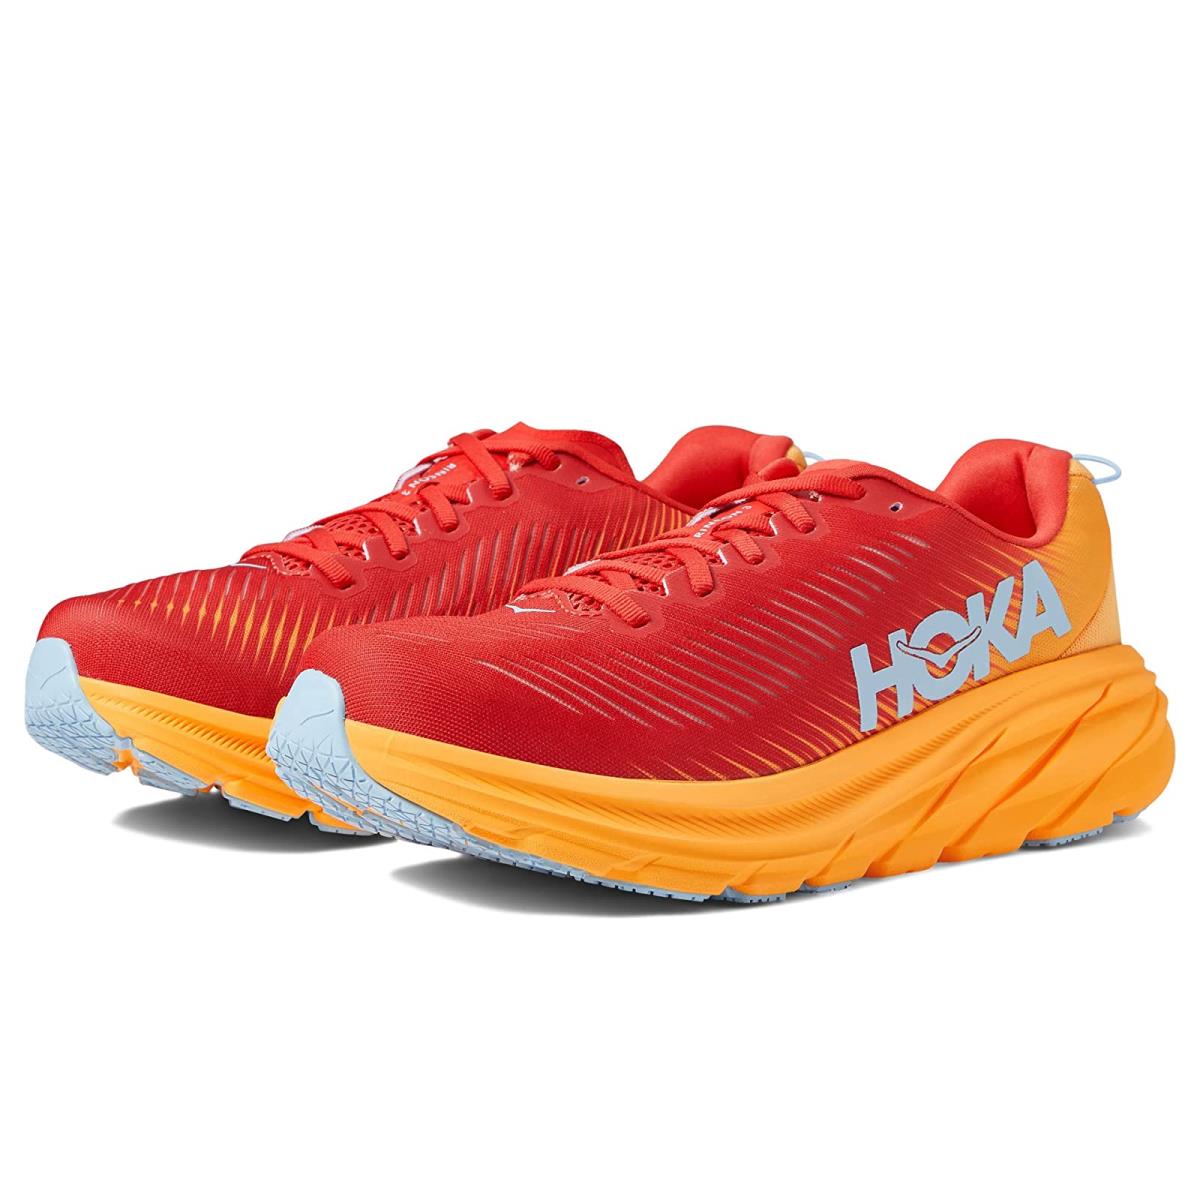 Hoka Rincon 3 Men's Everyday Running Shoe - Fiesta / Amber Yellow - Size 13